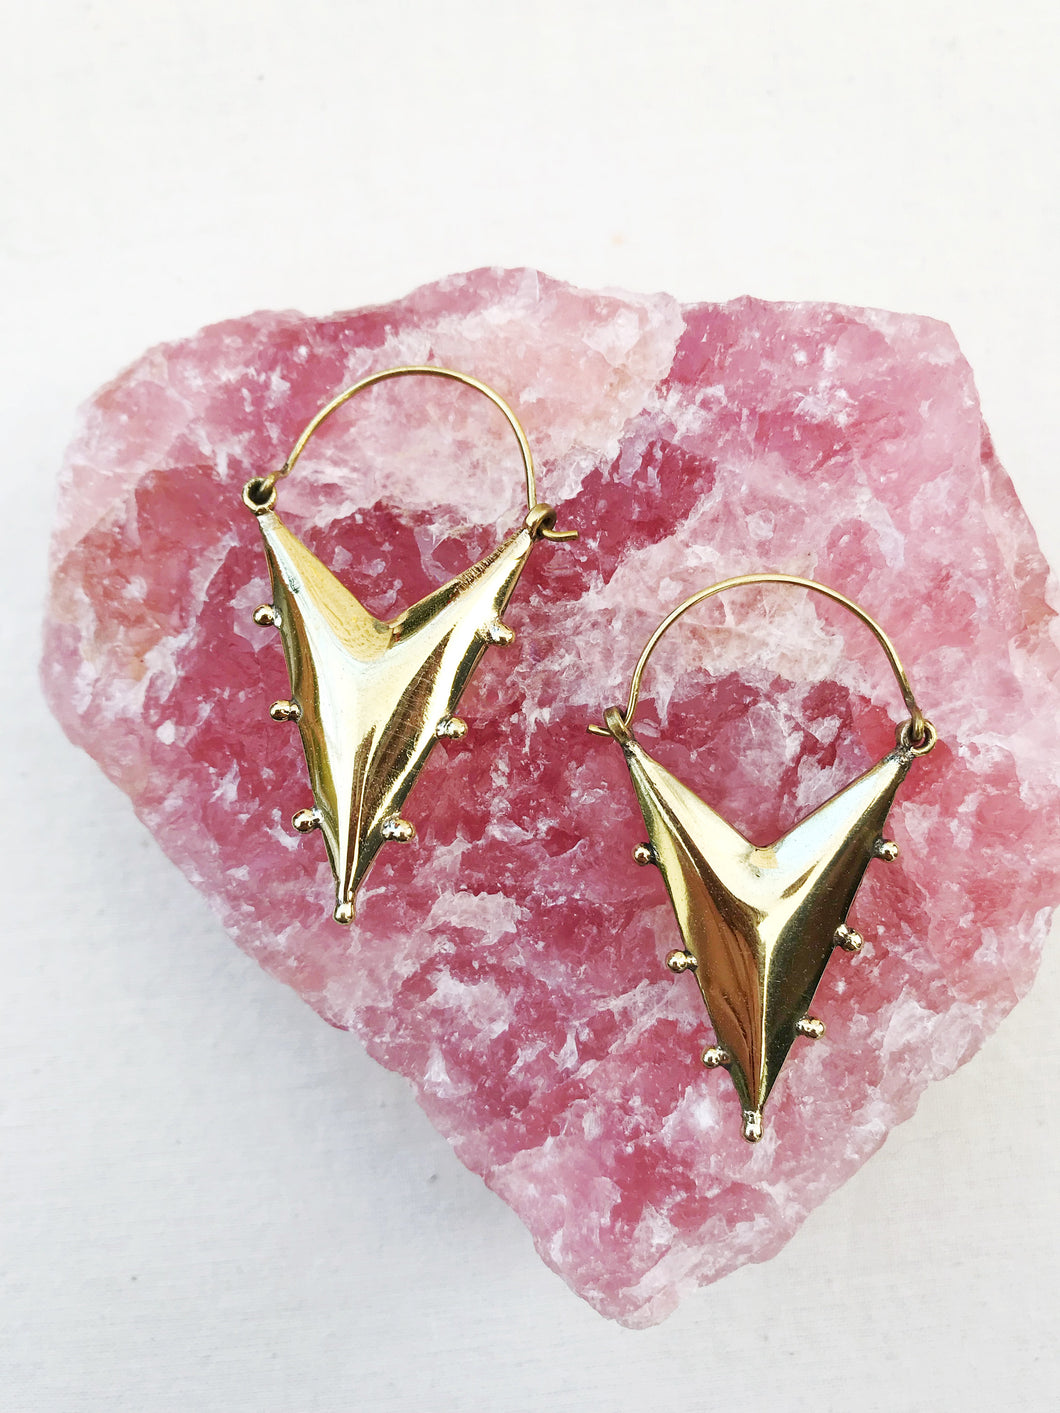 Triangle Brass Earrings